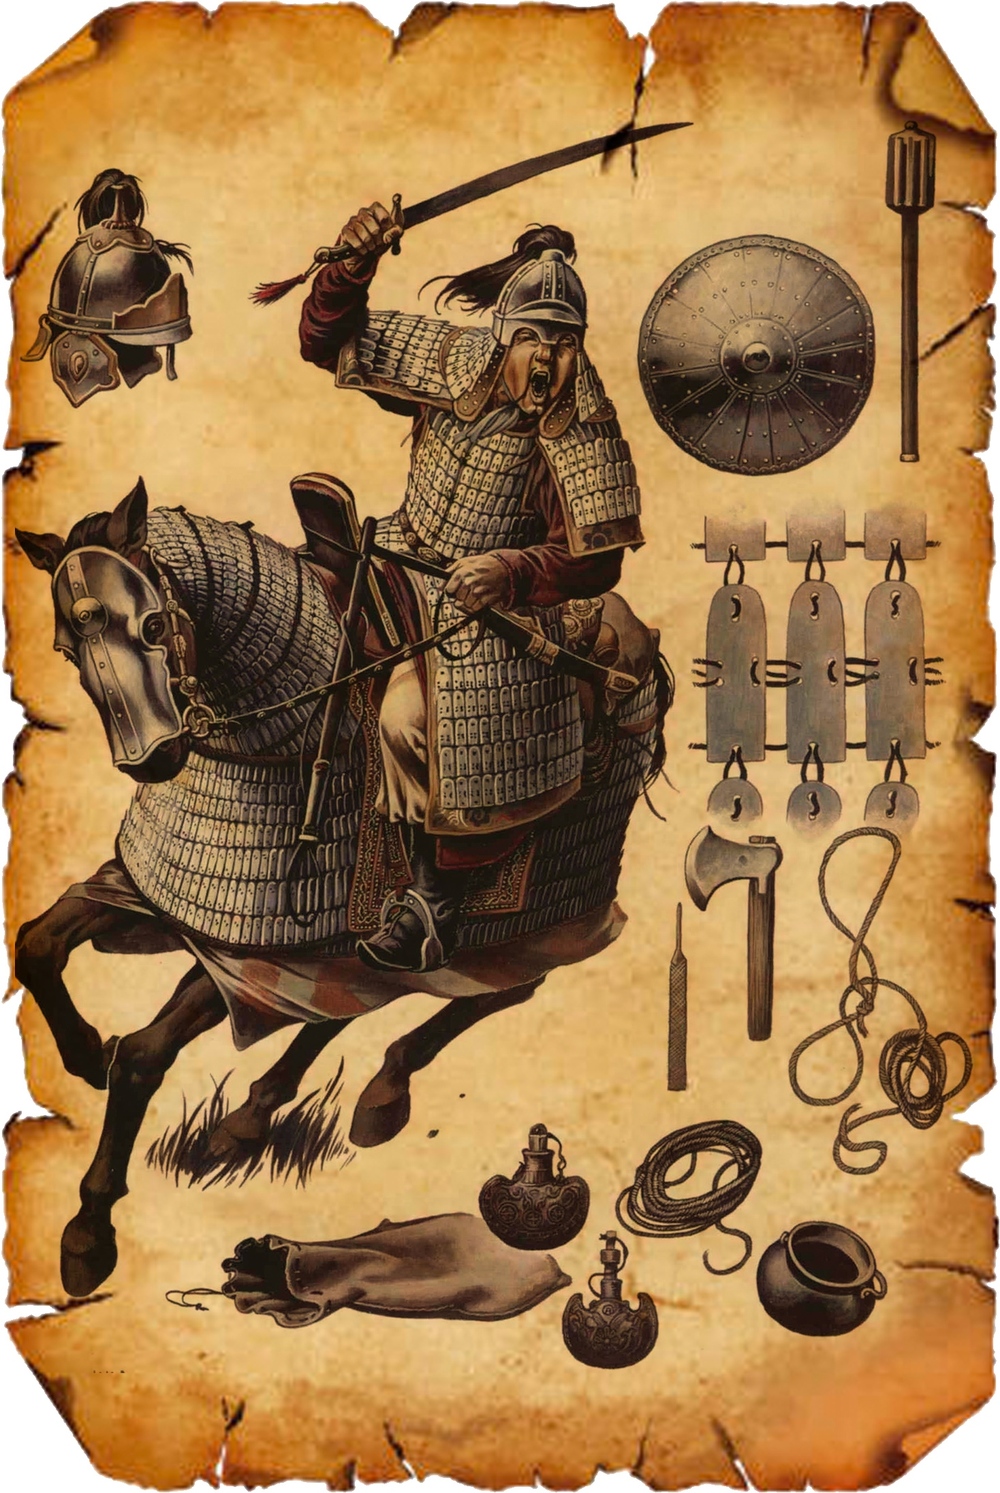 Lính triều Trần nhỏ thó đánh bại kỵ binh Nguyên - Mông cao lớn thế nào? - Ảnh 4.